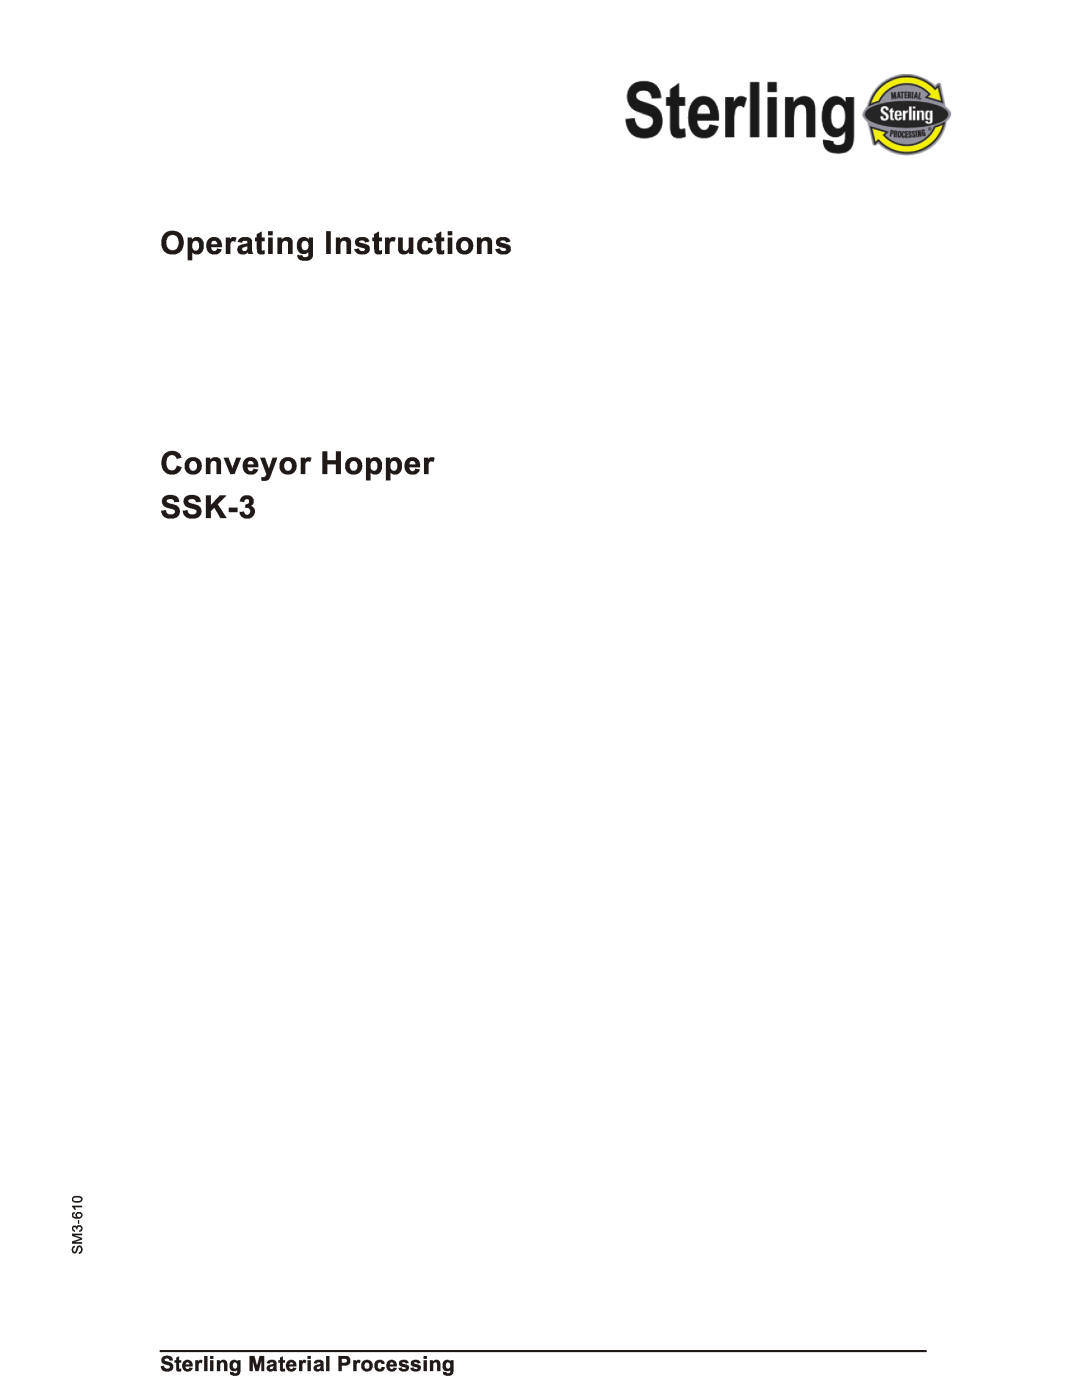 Sterling SSk-3 operating instructions Sterling Material Processing, Operating Instructions Conveyor Hopper SSK-3, SM3-610 